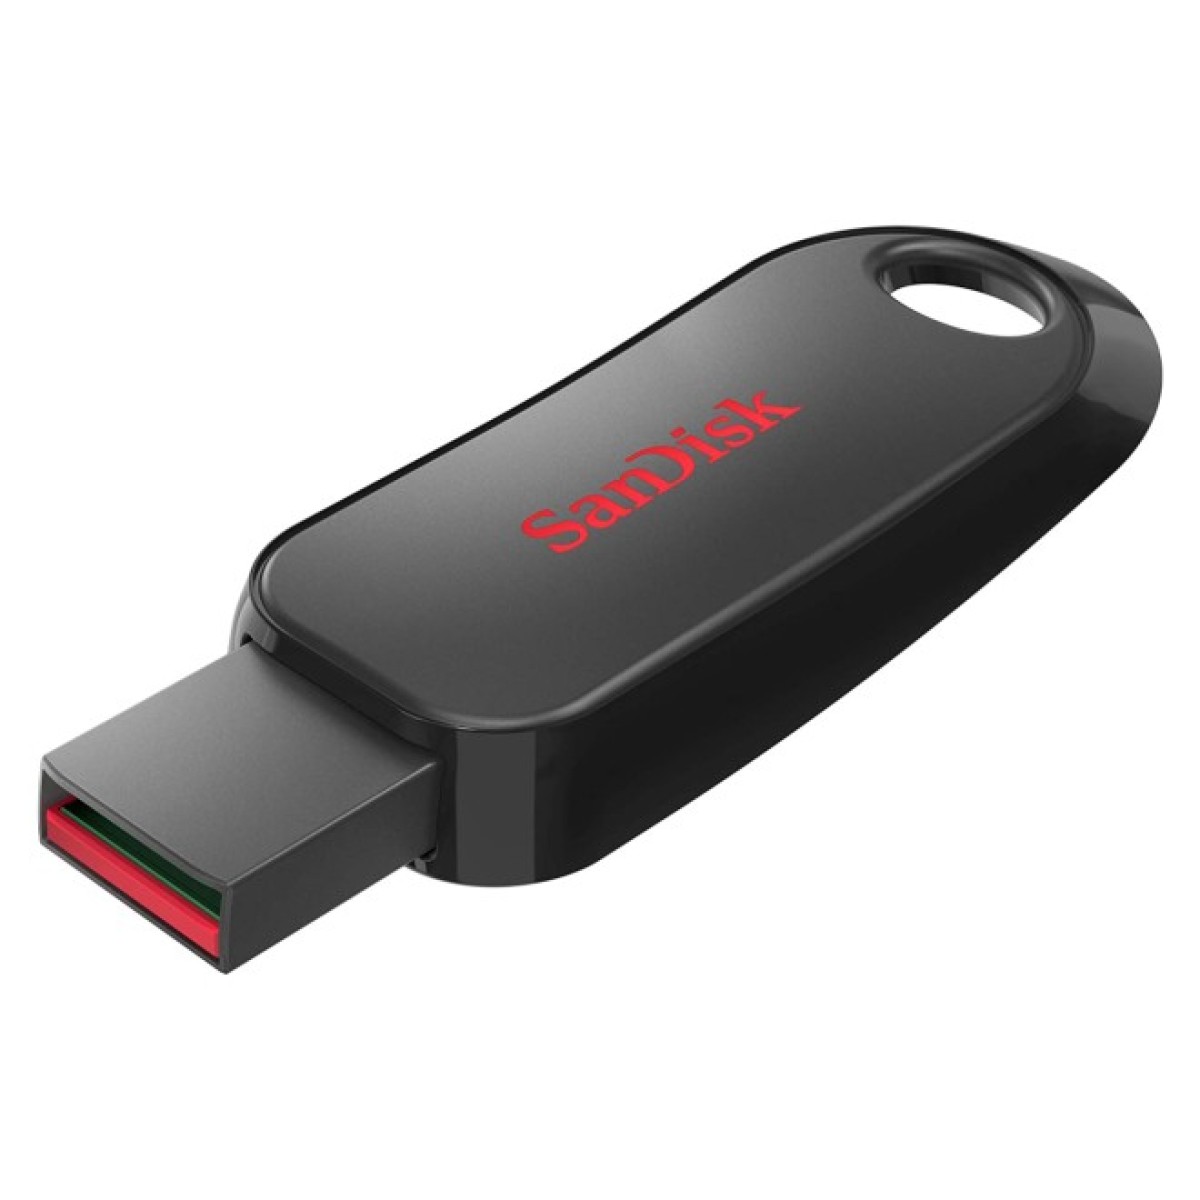 USB флеш накопитель SanDisk 32GB Cruzer Snap Black (SDCZ62-032G-G35) 256_256.jpg